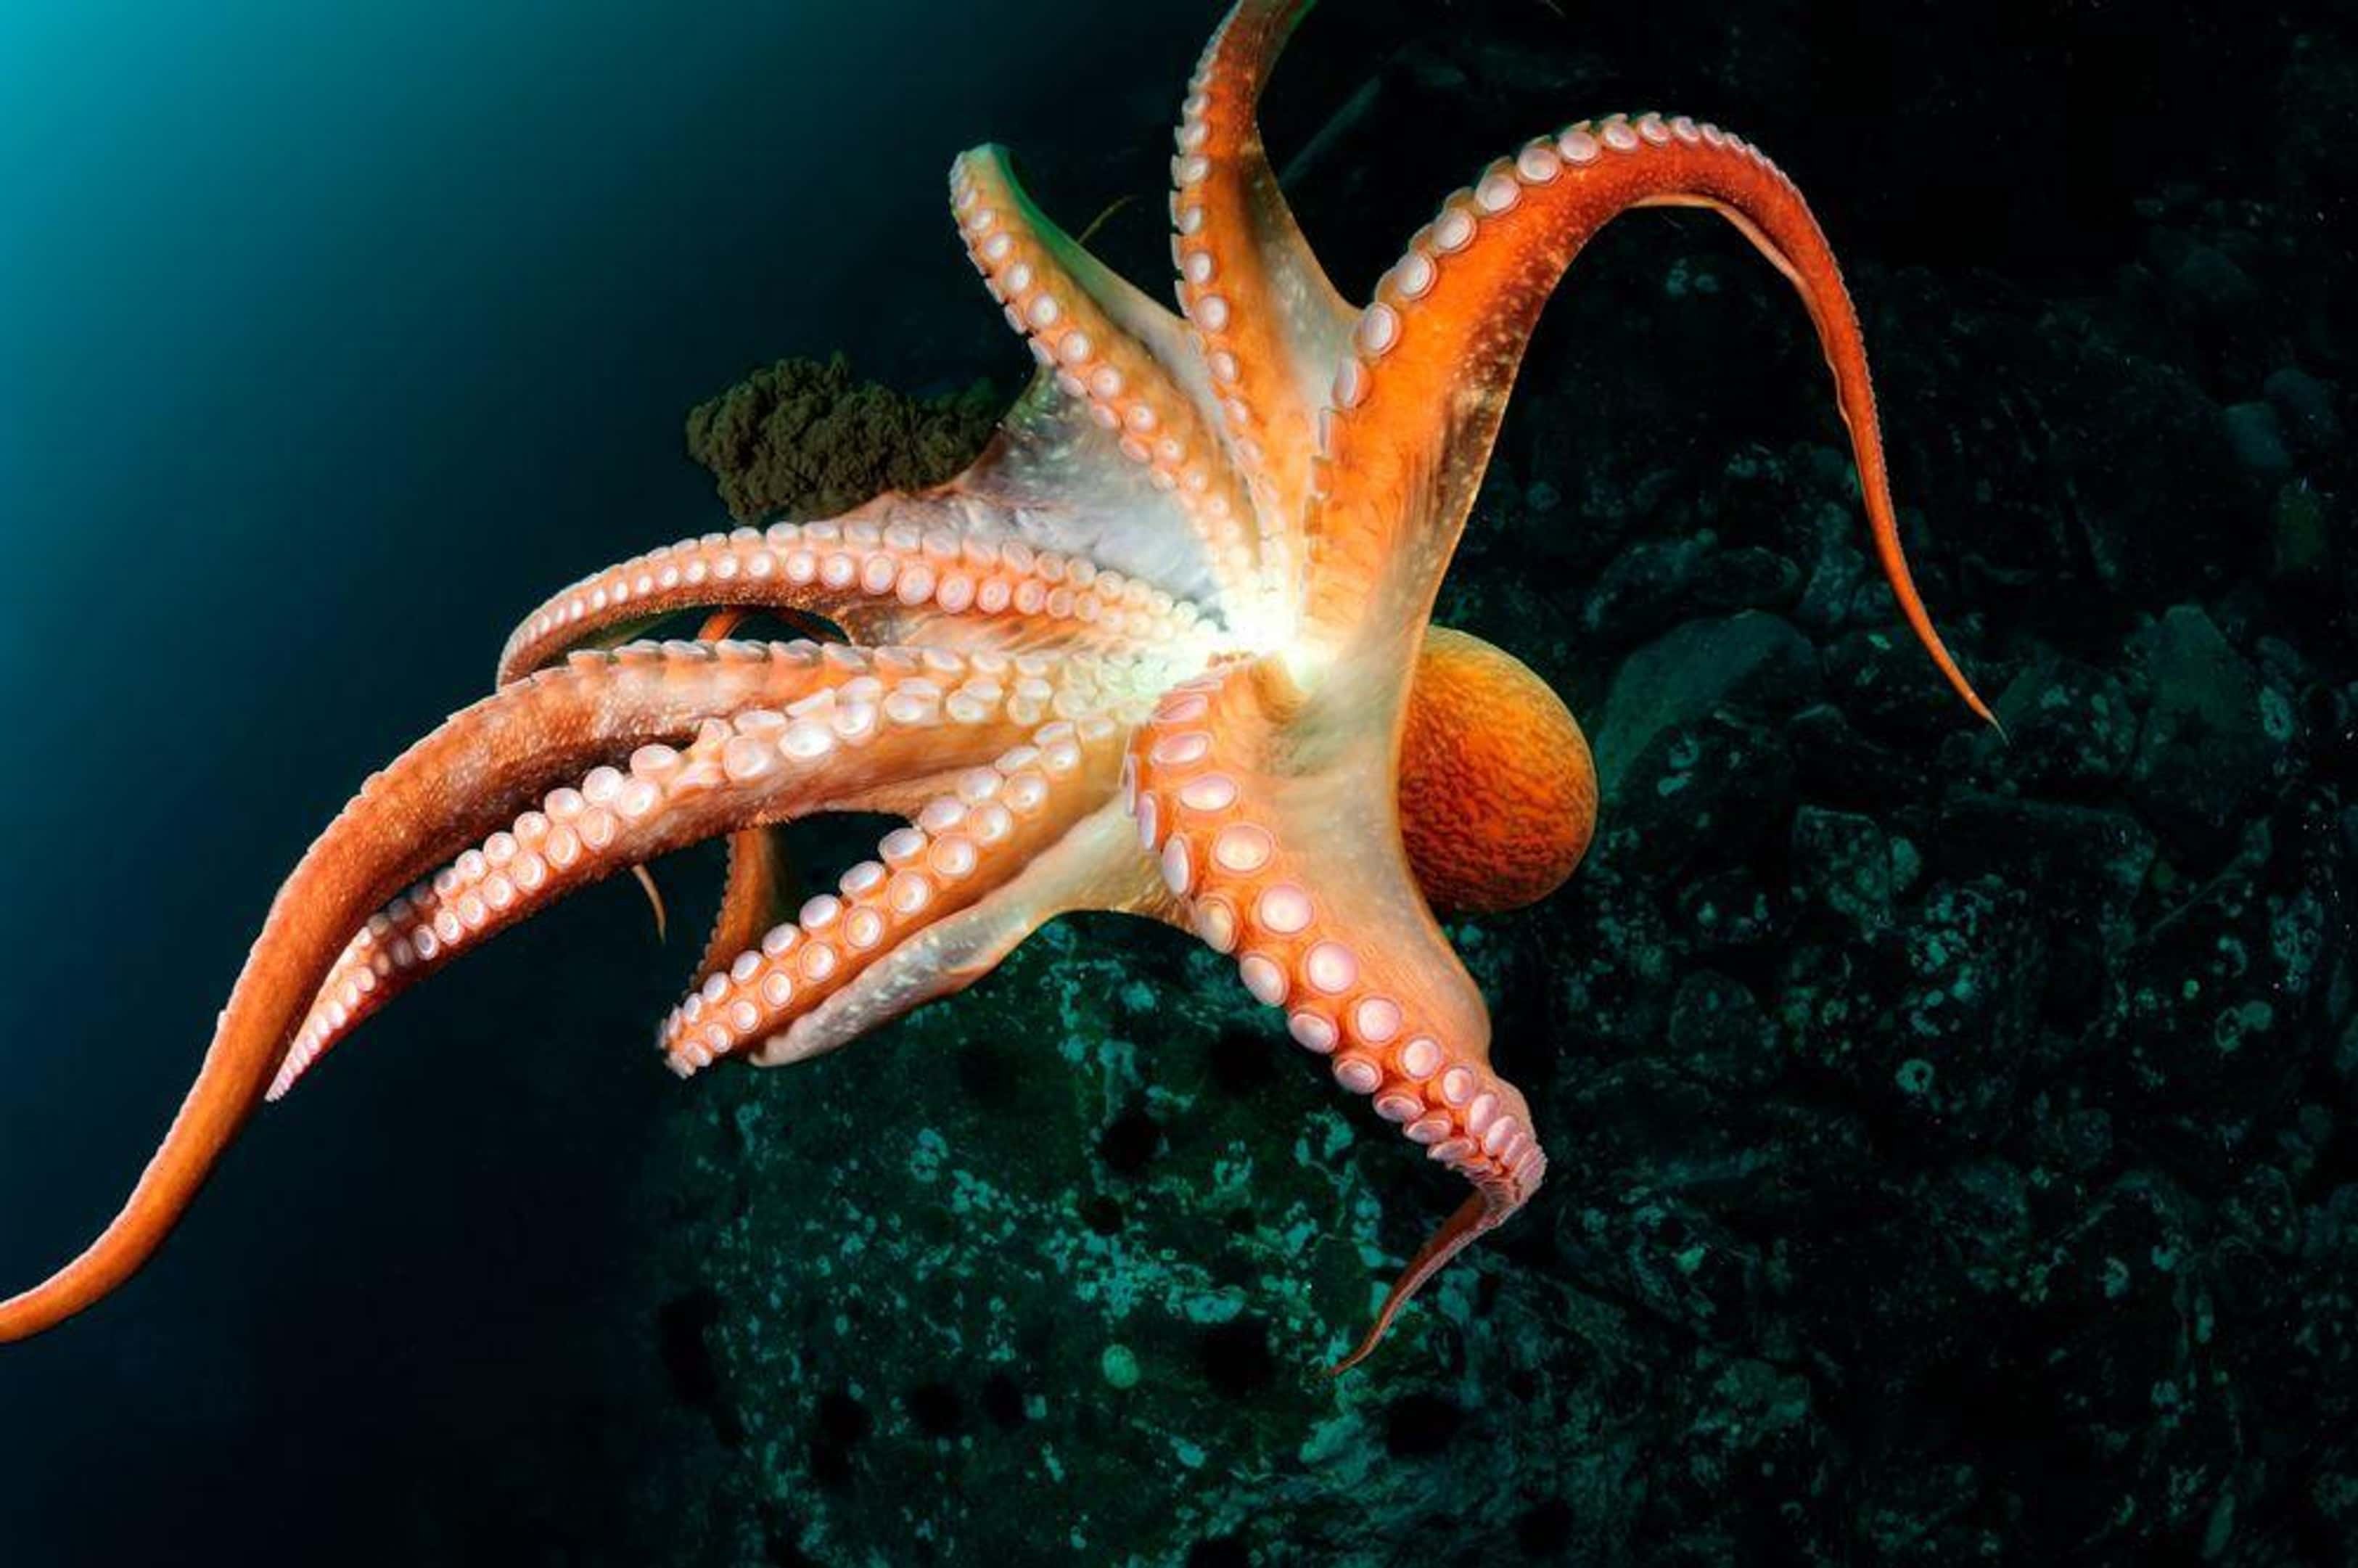 М морские обитатели. Головоногие моллюски осьминог. Головоногие моллюски осьминог Синекольчатый. Дальневосточный гигантский осьминог. Осьминог Vitreledonella Richardi.